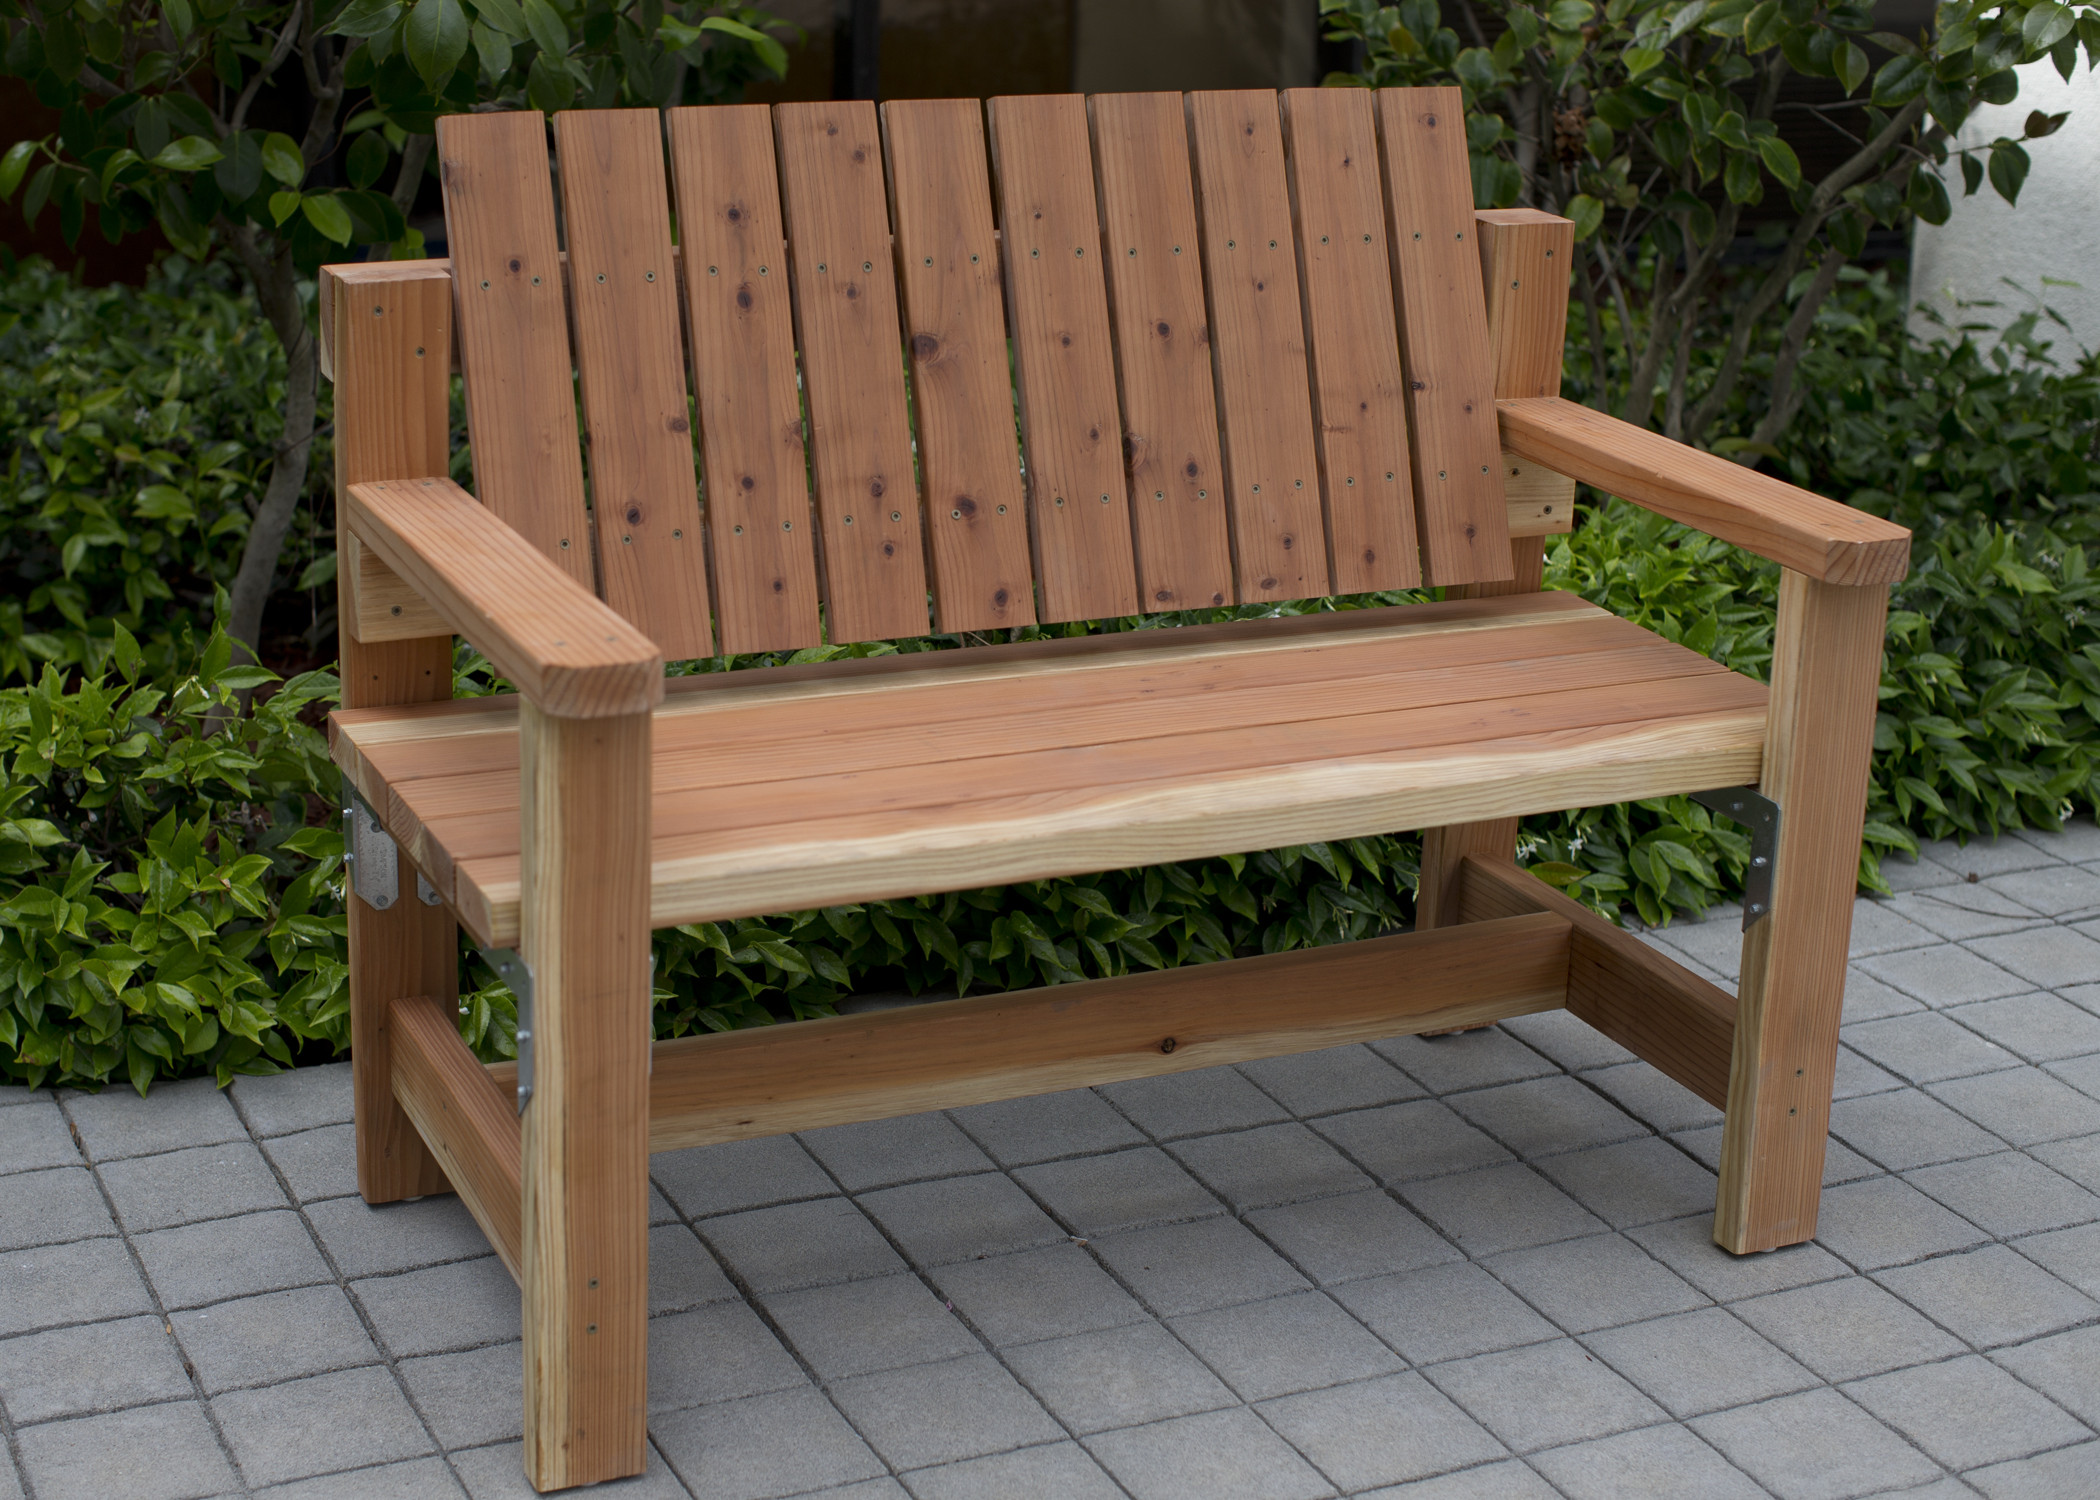 DIY Outdoor Bench Seats
 DIY Garden Bench Preview DIY Done Right